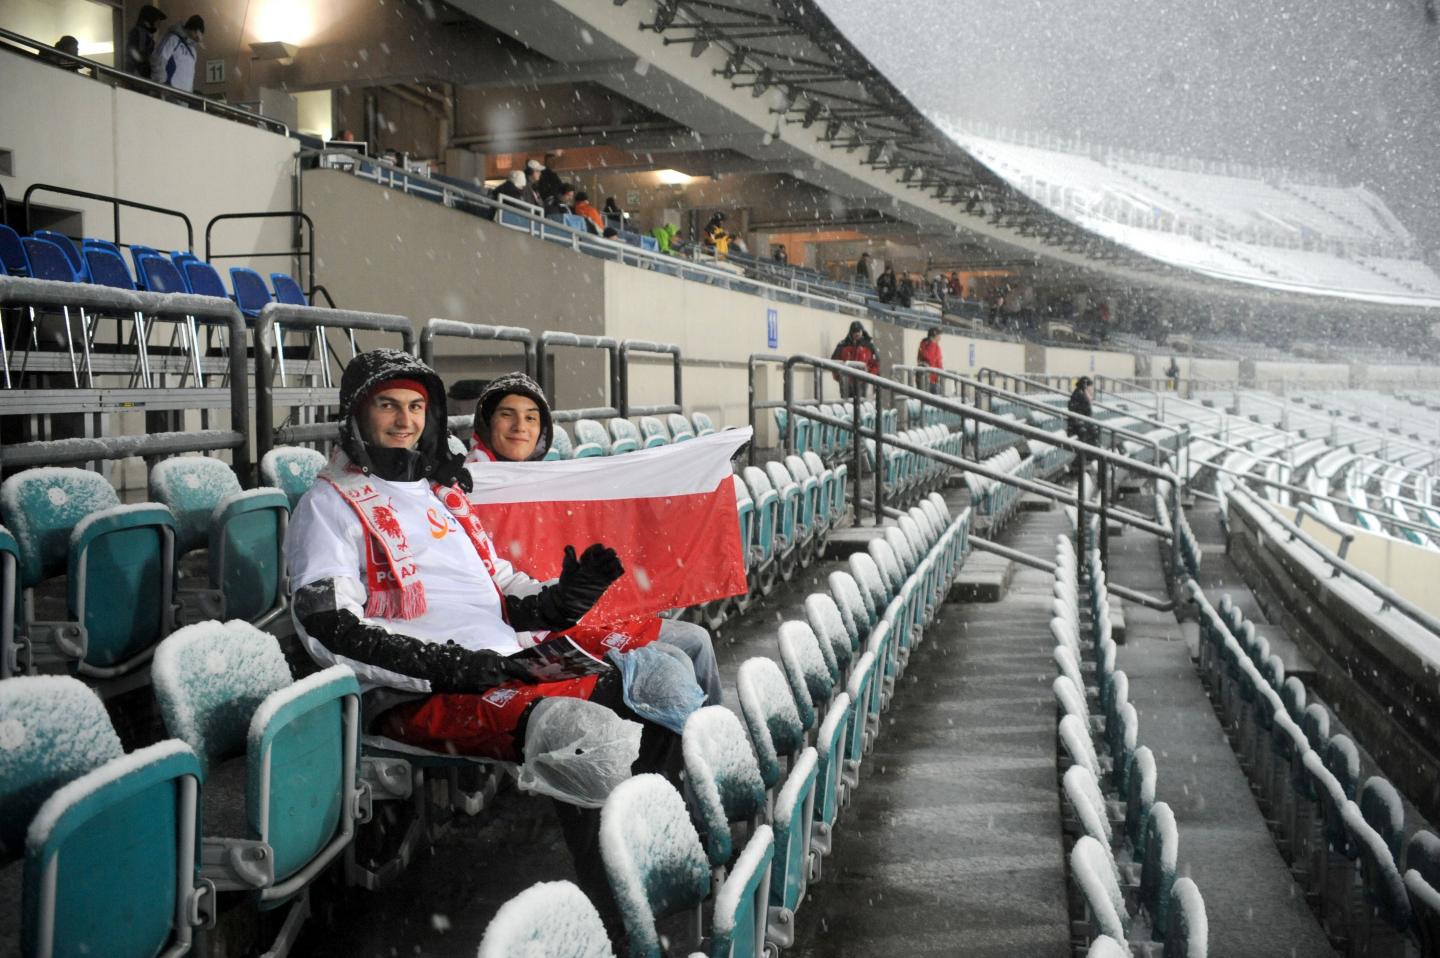 Podczas meczu ze Słowacją Stadion Śląski świecił pustkami. Biało-czerwoni tym razem mogli liczyć tylko na najwierniejszych kibiców.